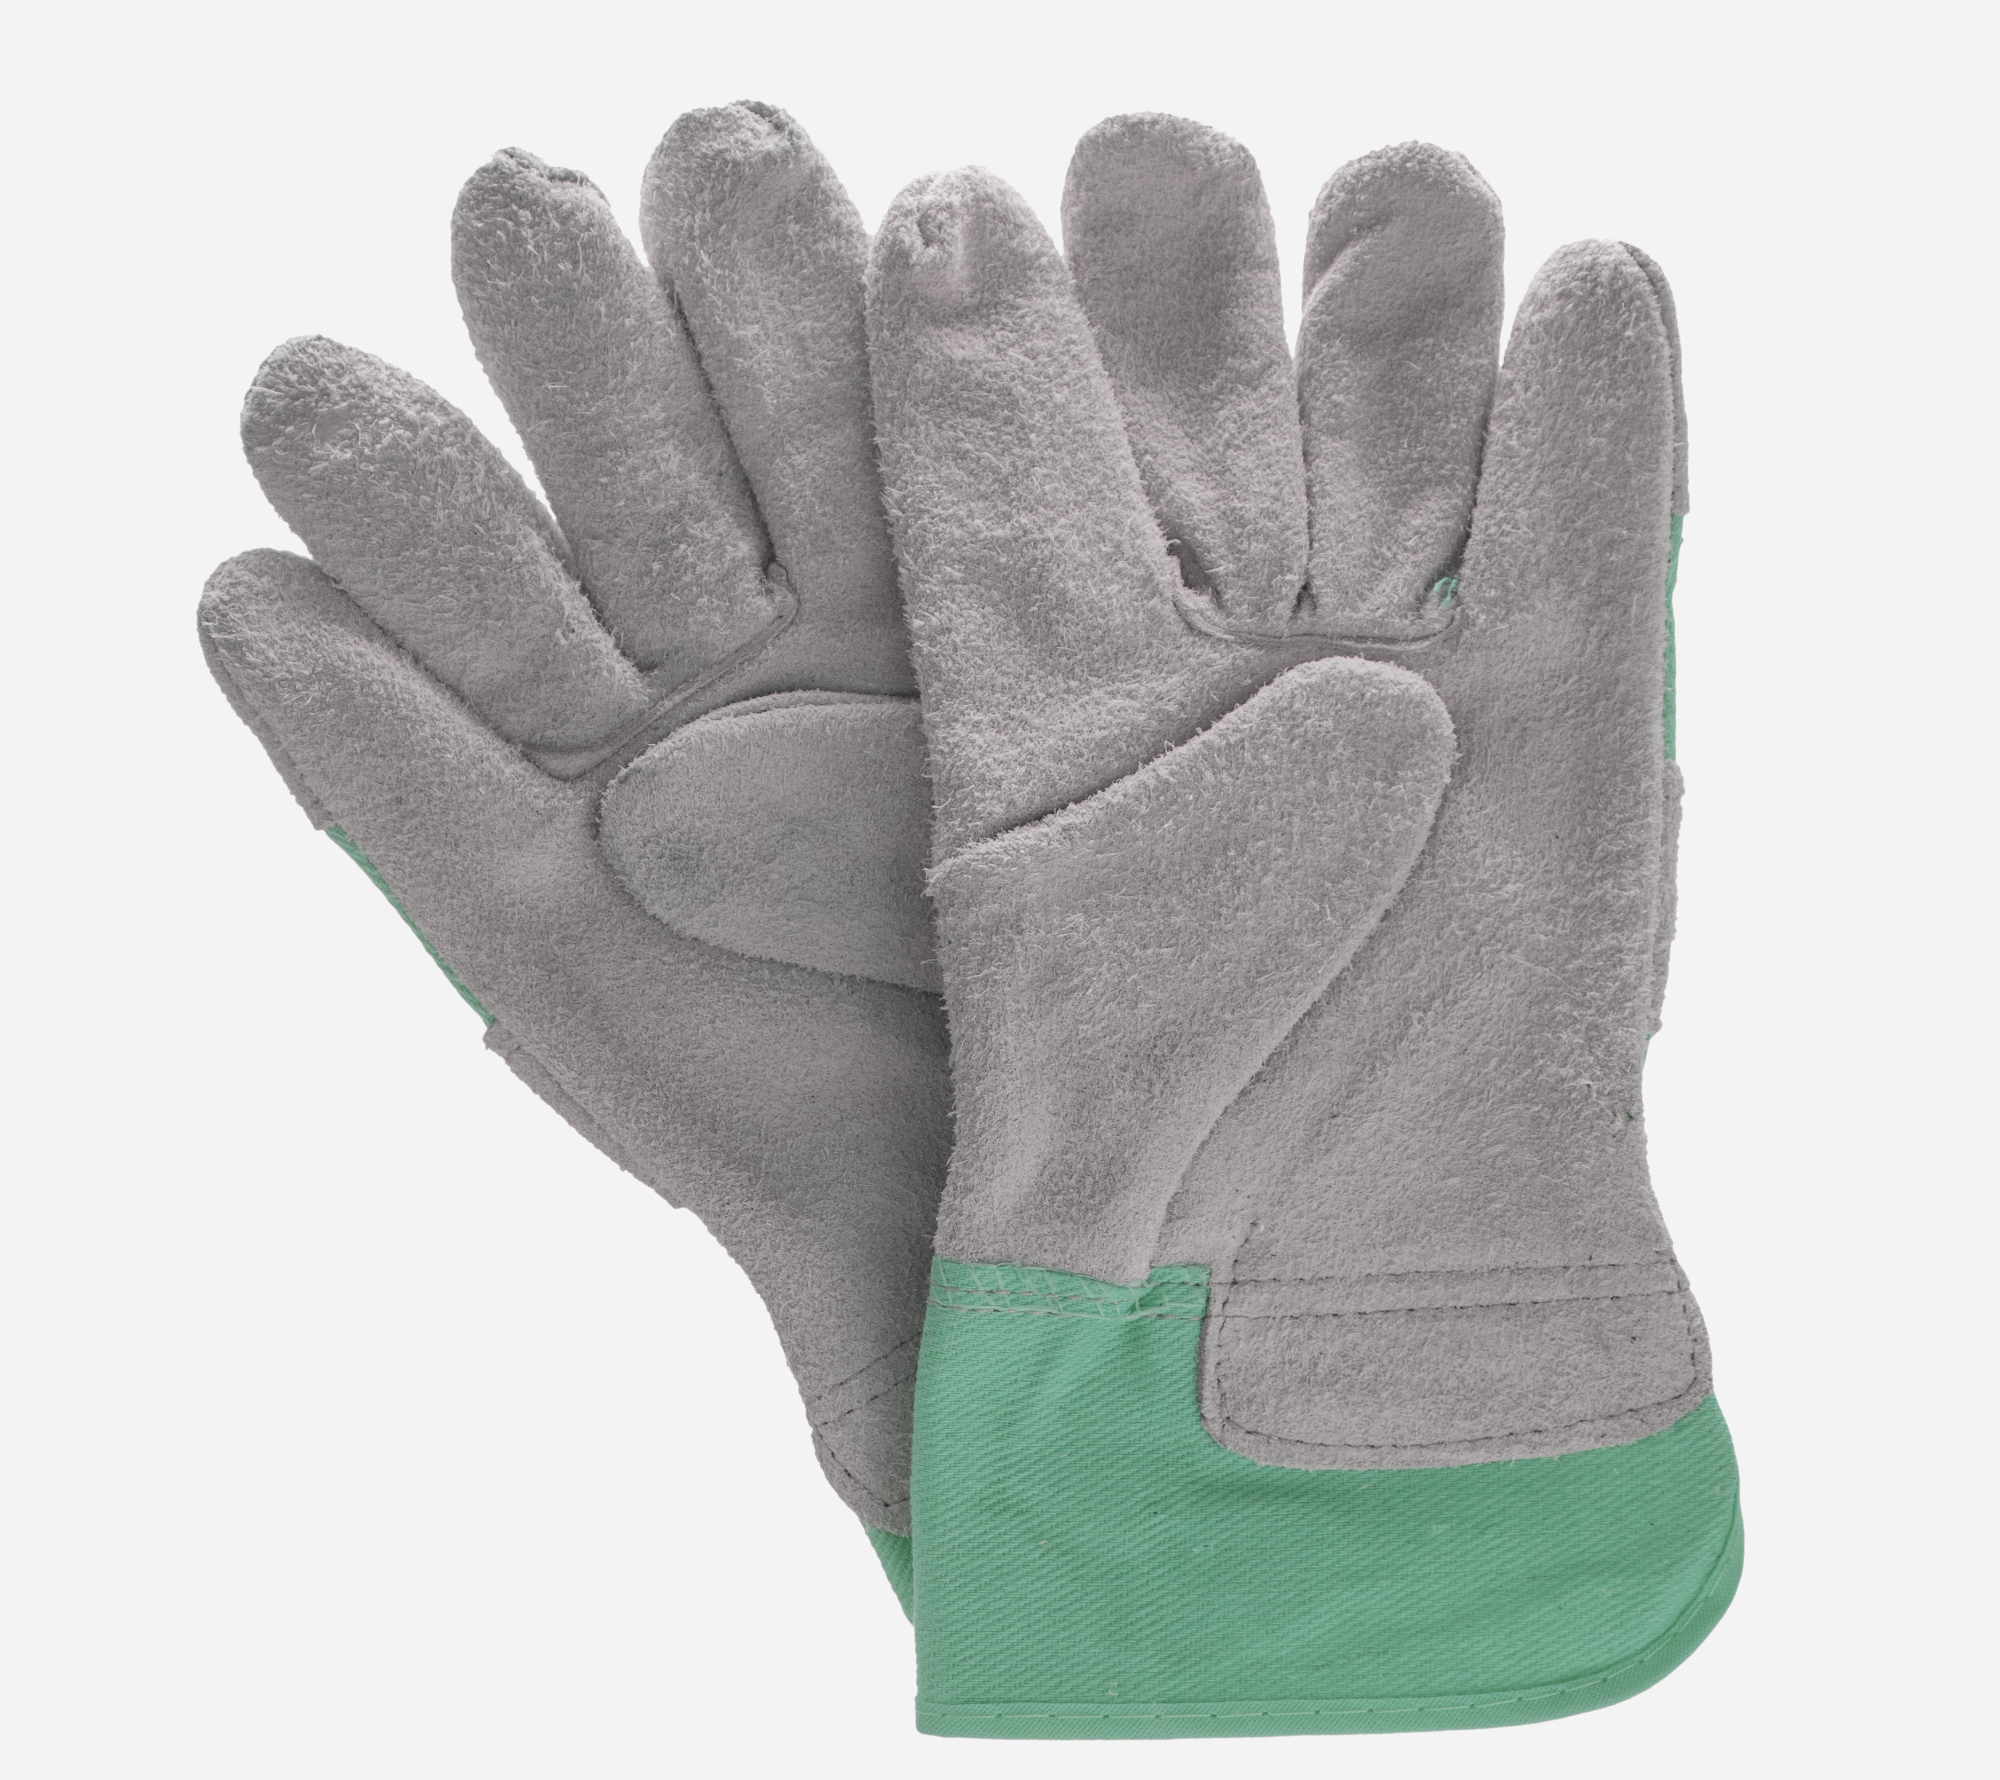 Zaščitne rokavice omogočajo popolno varnost rok pri delu